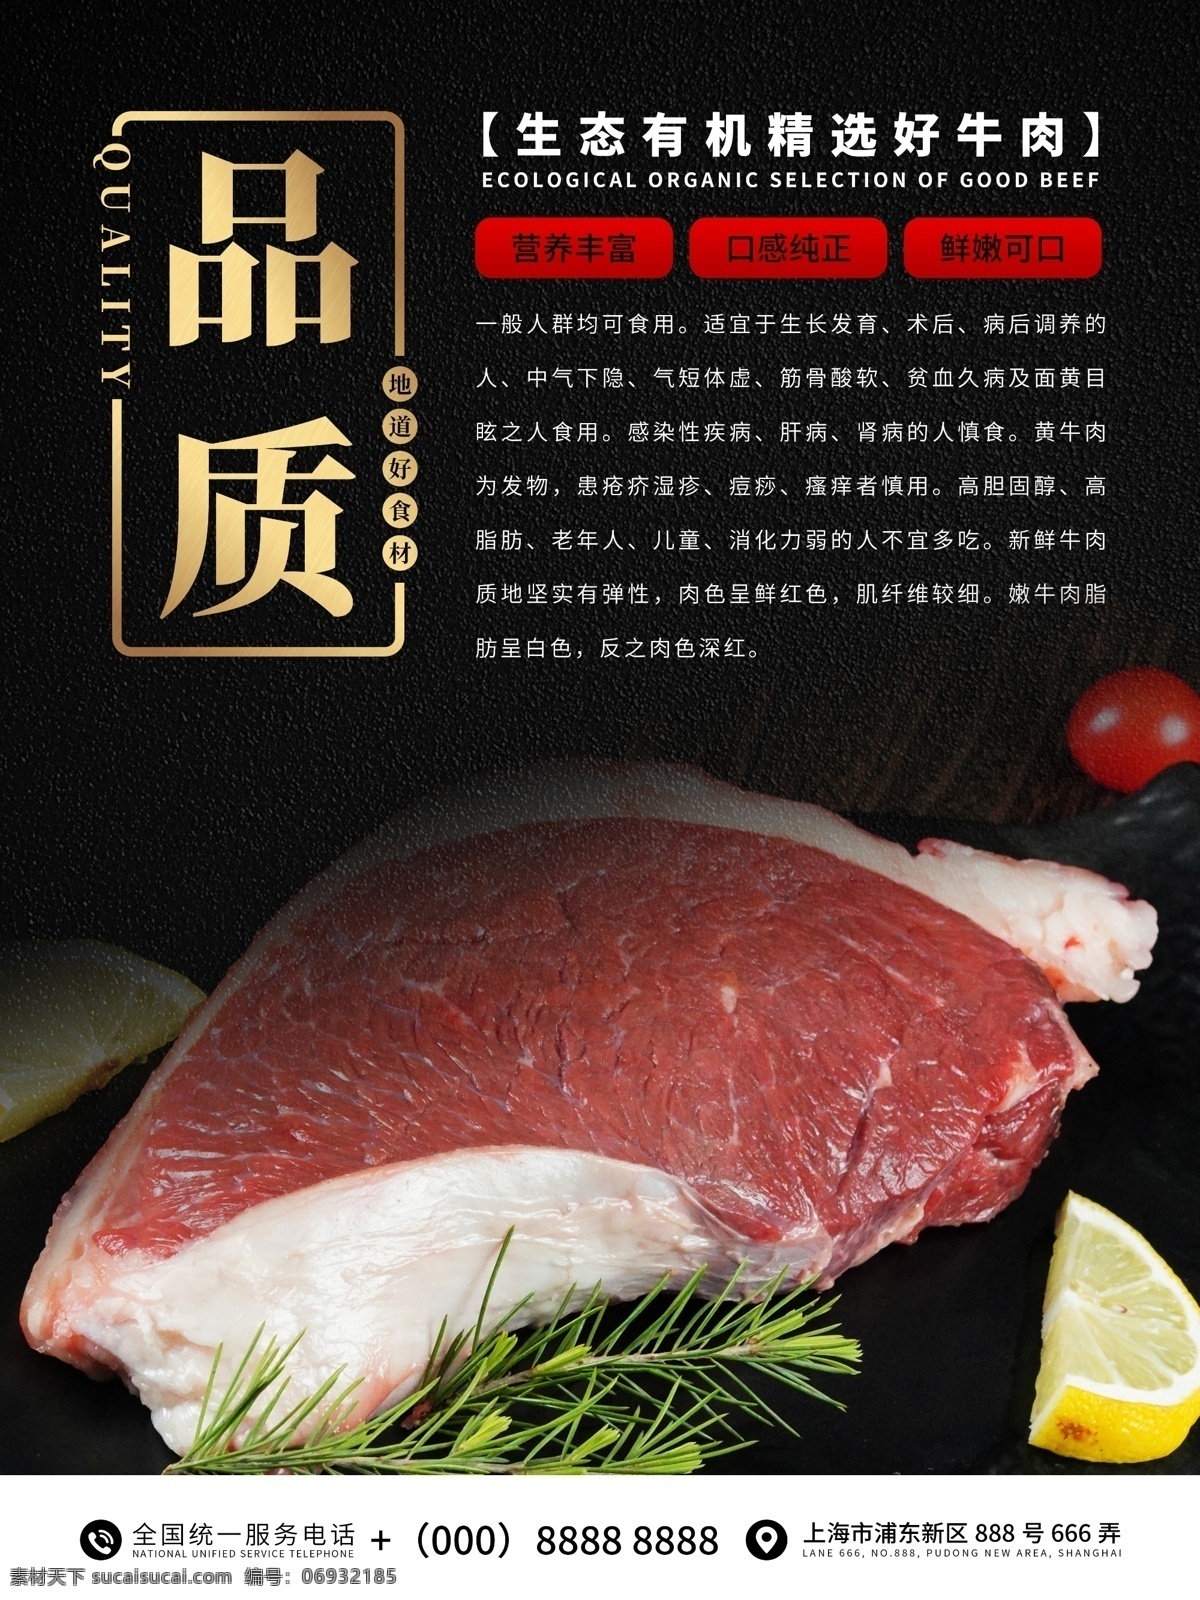 品质牛肉海报 牛肉 牛排 美食 烤肉 食品海报 美食海报 肉类 生鲜 禽类 超市海报 产品介绍 宣传海报